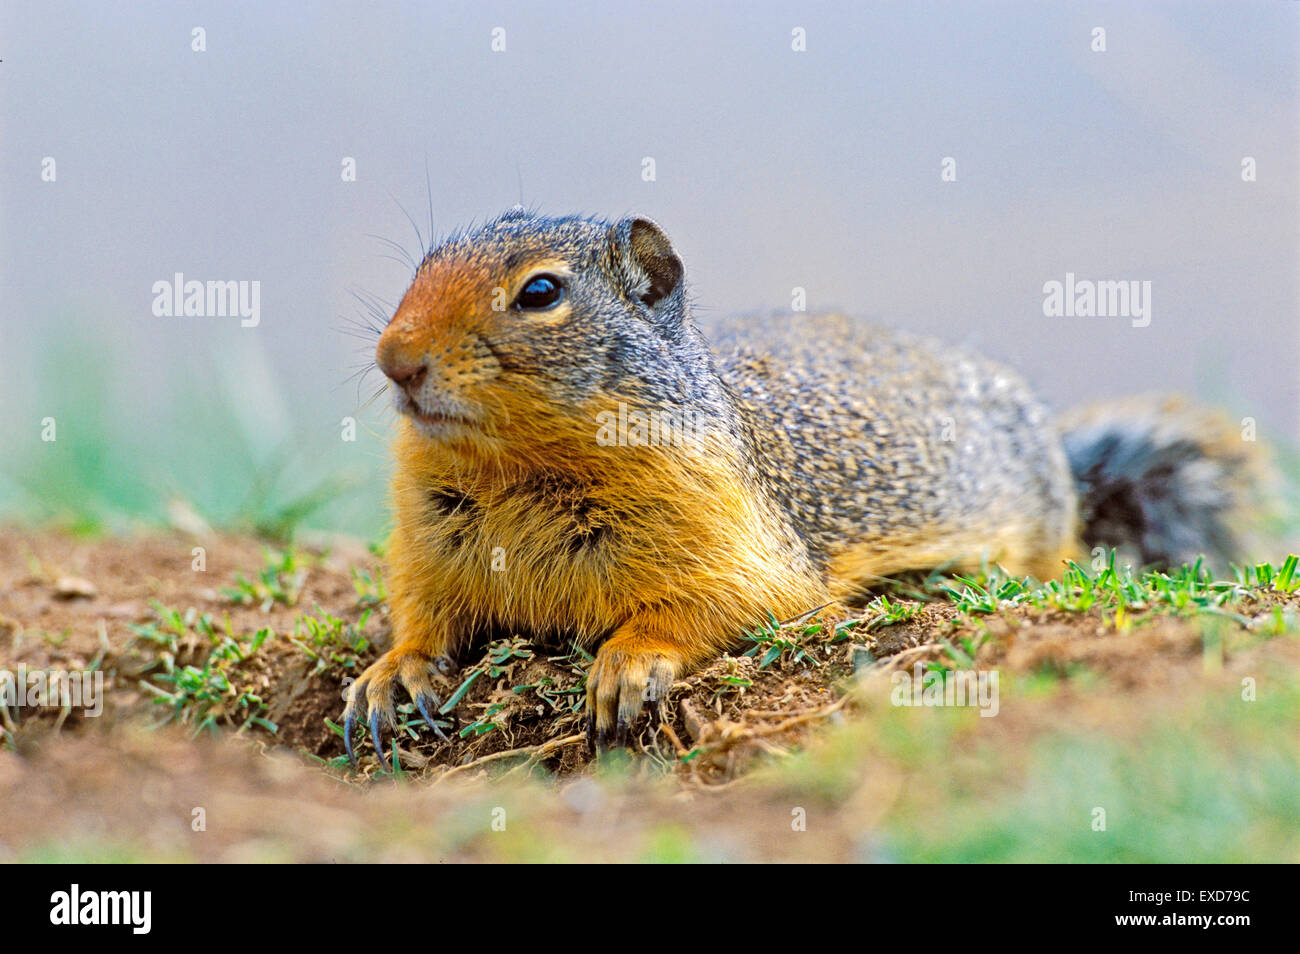 Terra colombiana scoiattolo posa in erba a den sito. Foto Stock